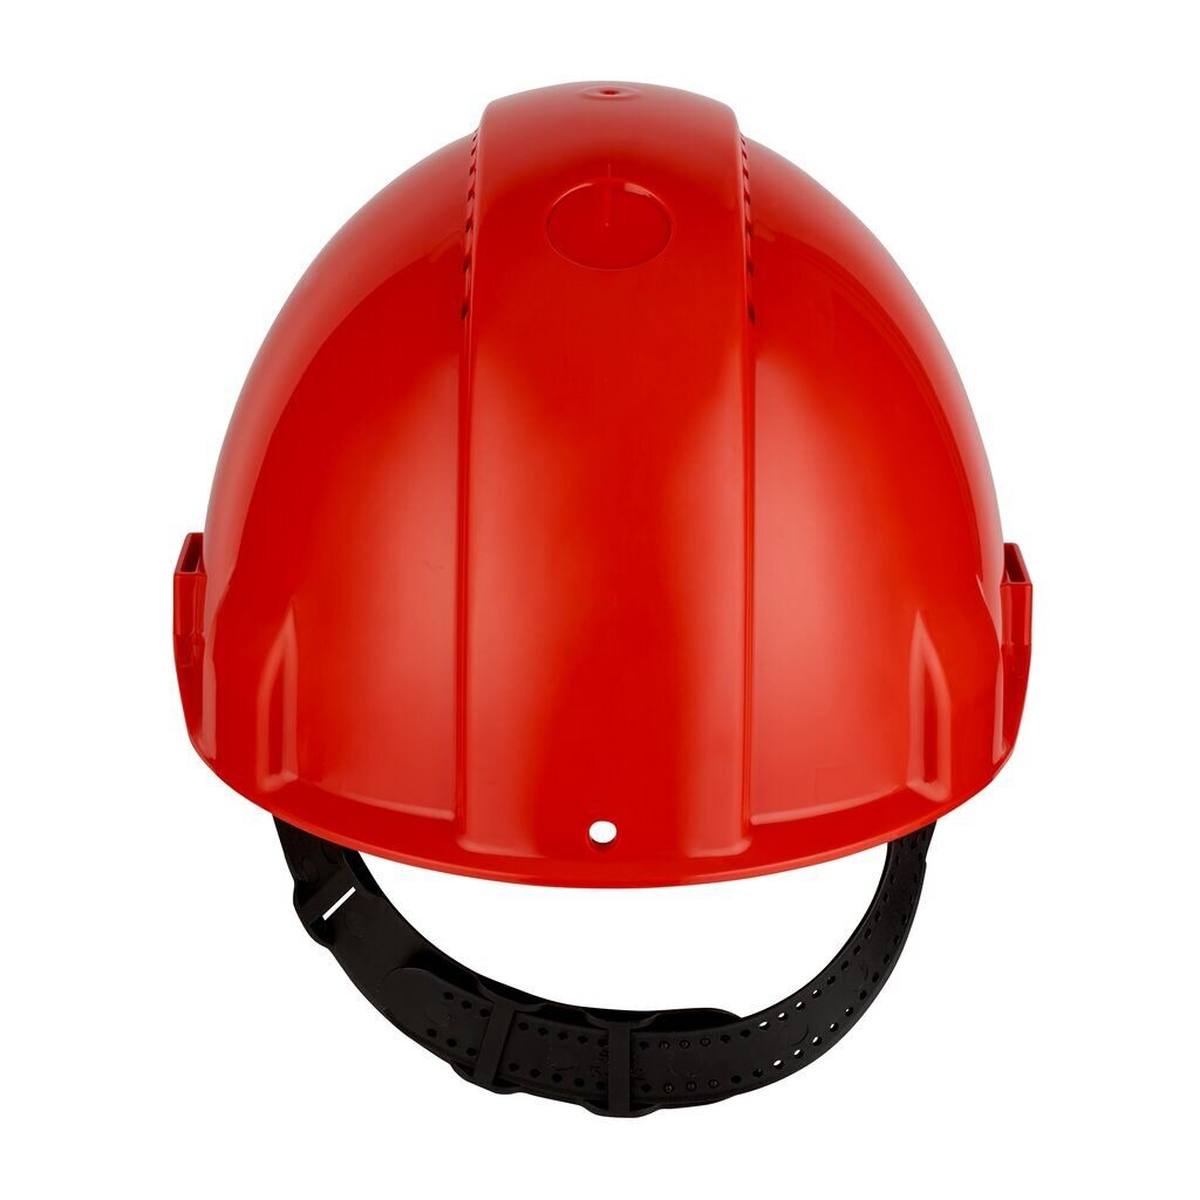 Casco de seguridad 3M G3000 G30CUR en rojo, ventilado, con uvicator, pinlock y banda de sudor de plástico